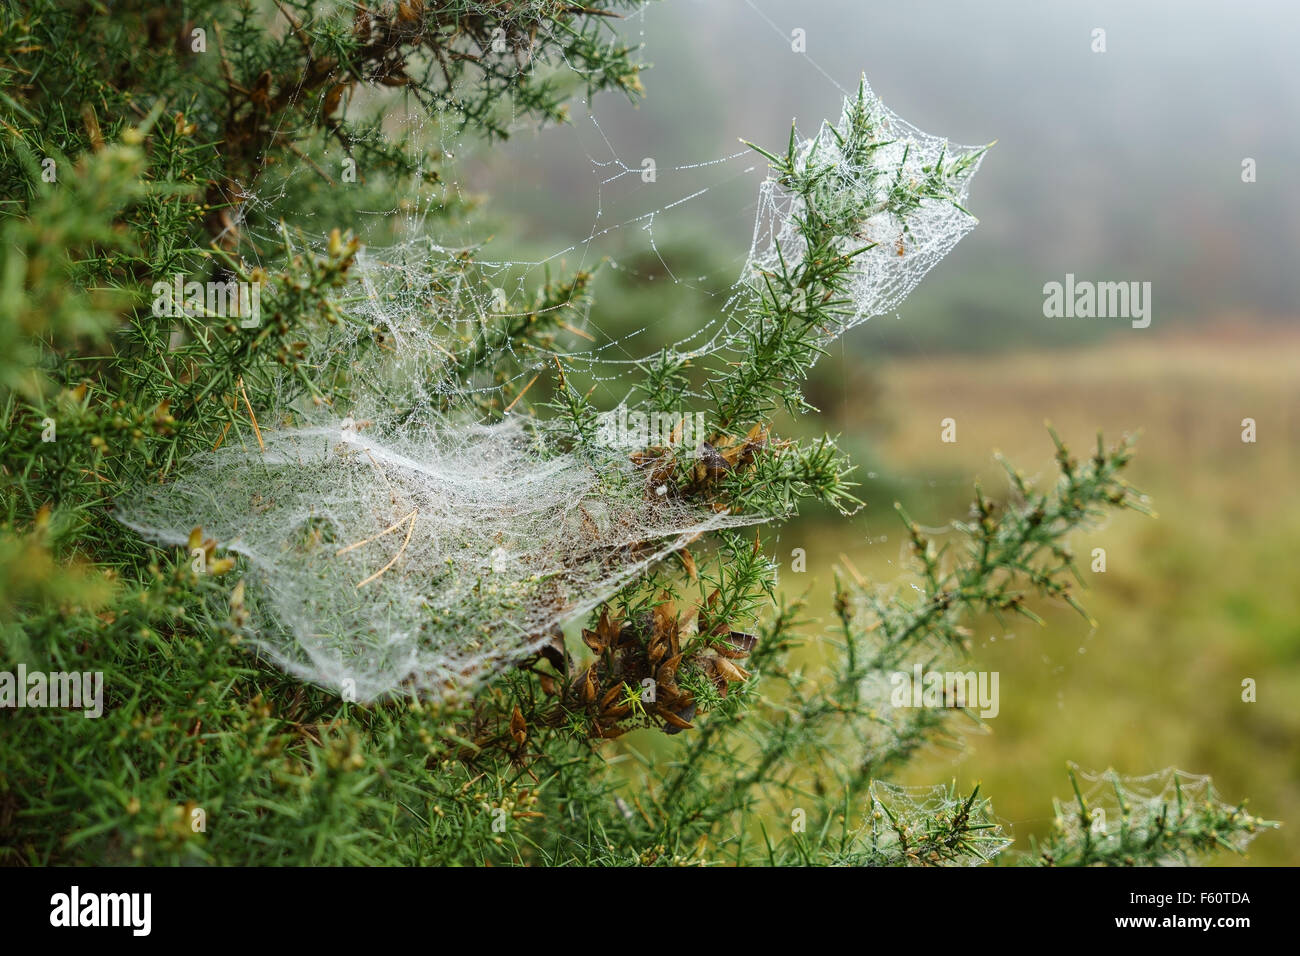 Una tela de araña en un tojo planta, cubiertas de gotas de agua en la niebla, en Escocia. Foto de stock